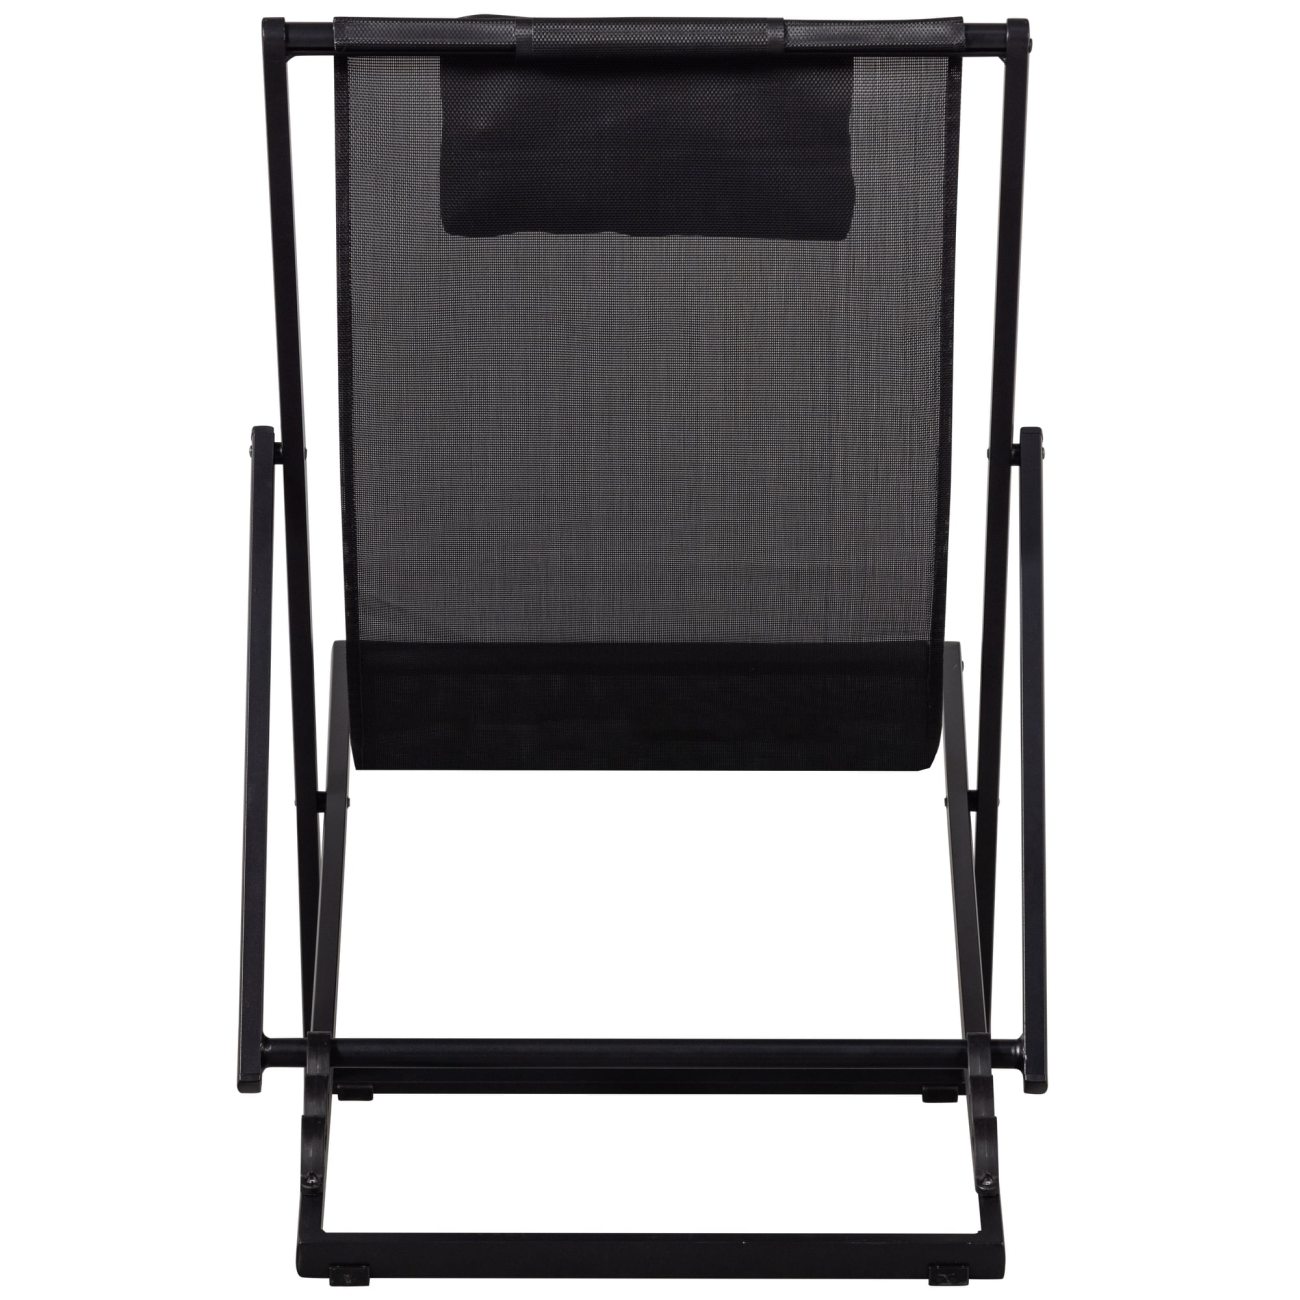 Der Liegestuhl Esper überzeugt mit seinem modernen Design. Gefertigt wurde er aus Textilene, welches einen schwarzen Farbton besitzt. Das Gestell ist aus Aluminium und hat eine schwarze Farbe. Der Stuhl besitzt eine Sitzhöhe von 35 cm.